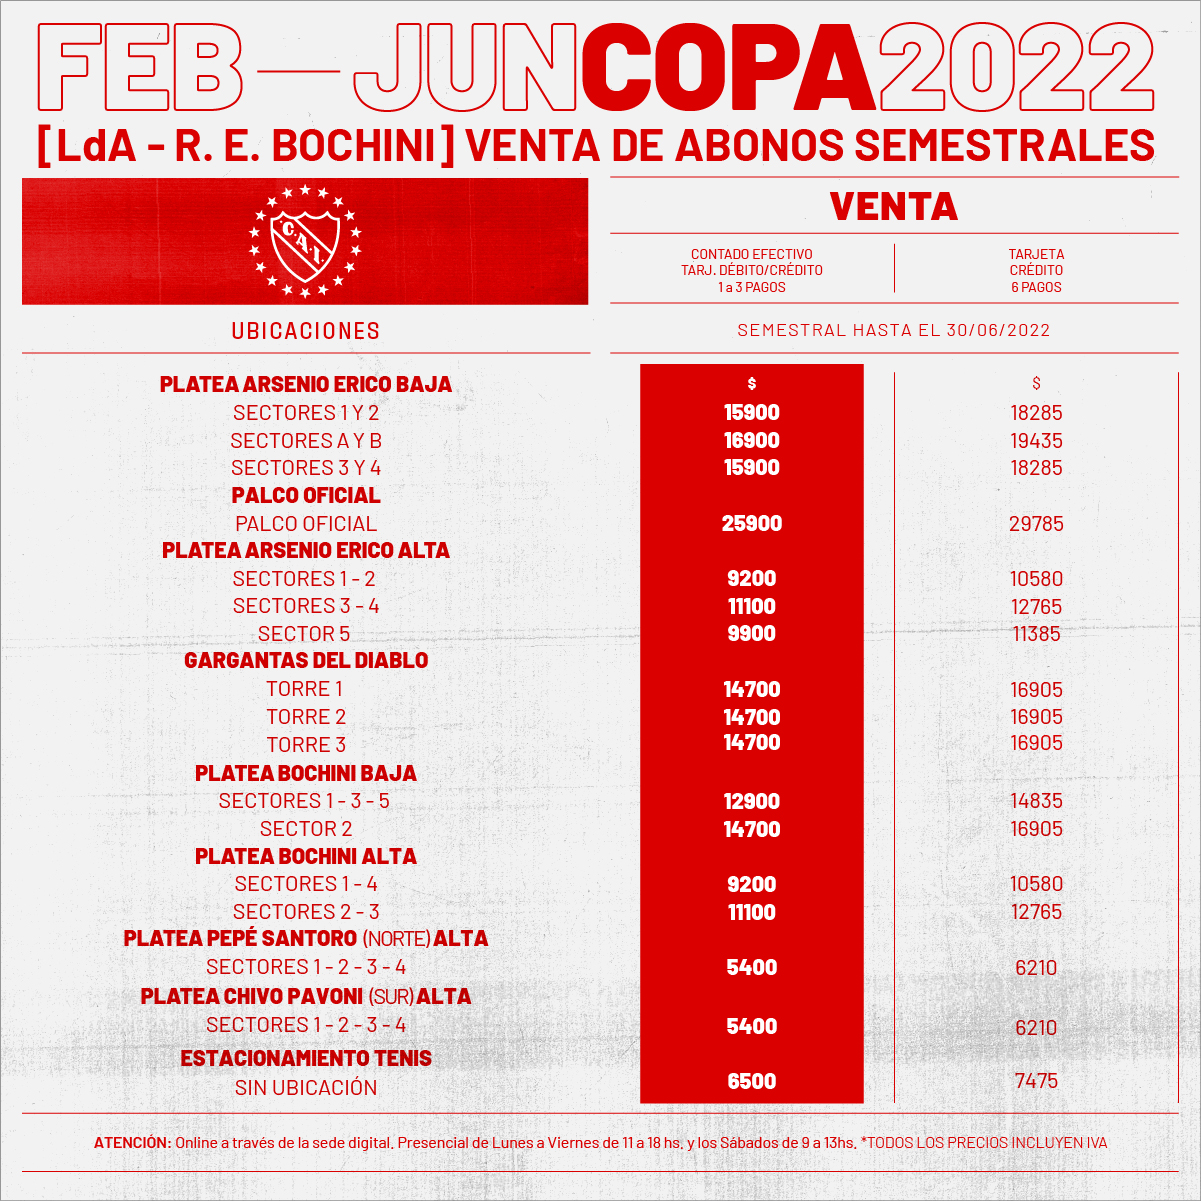 Esta es la lista de precios para reservar tu abono y acompañar siempre al Club Atlético Independiente.